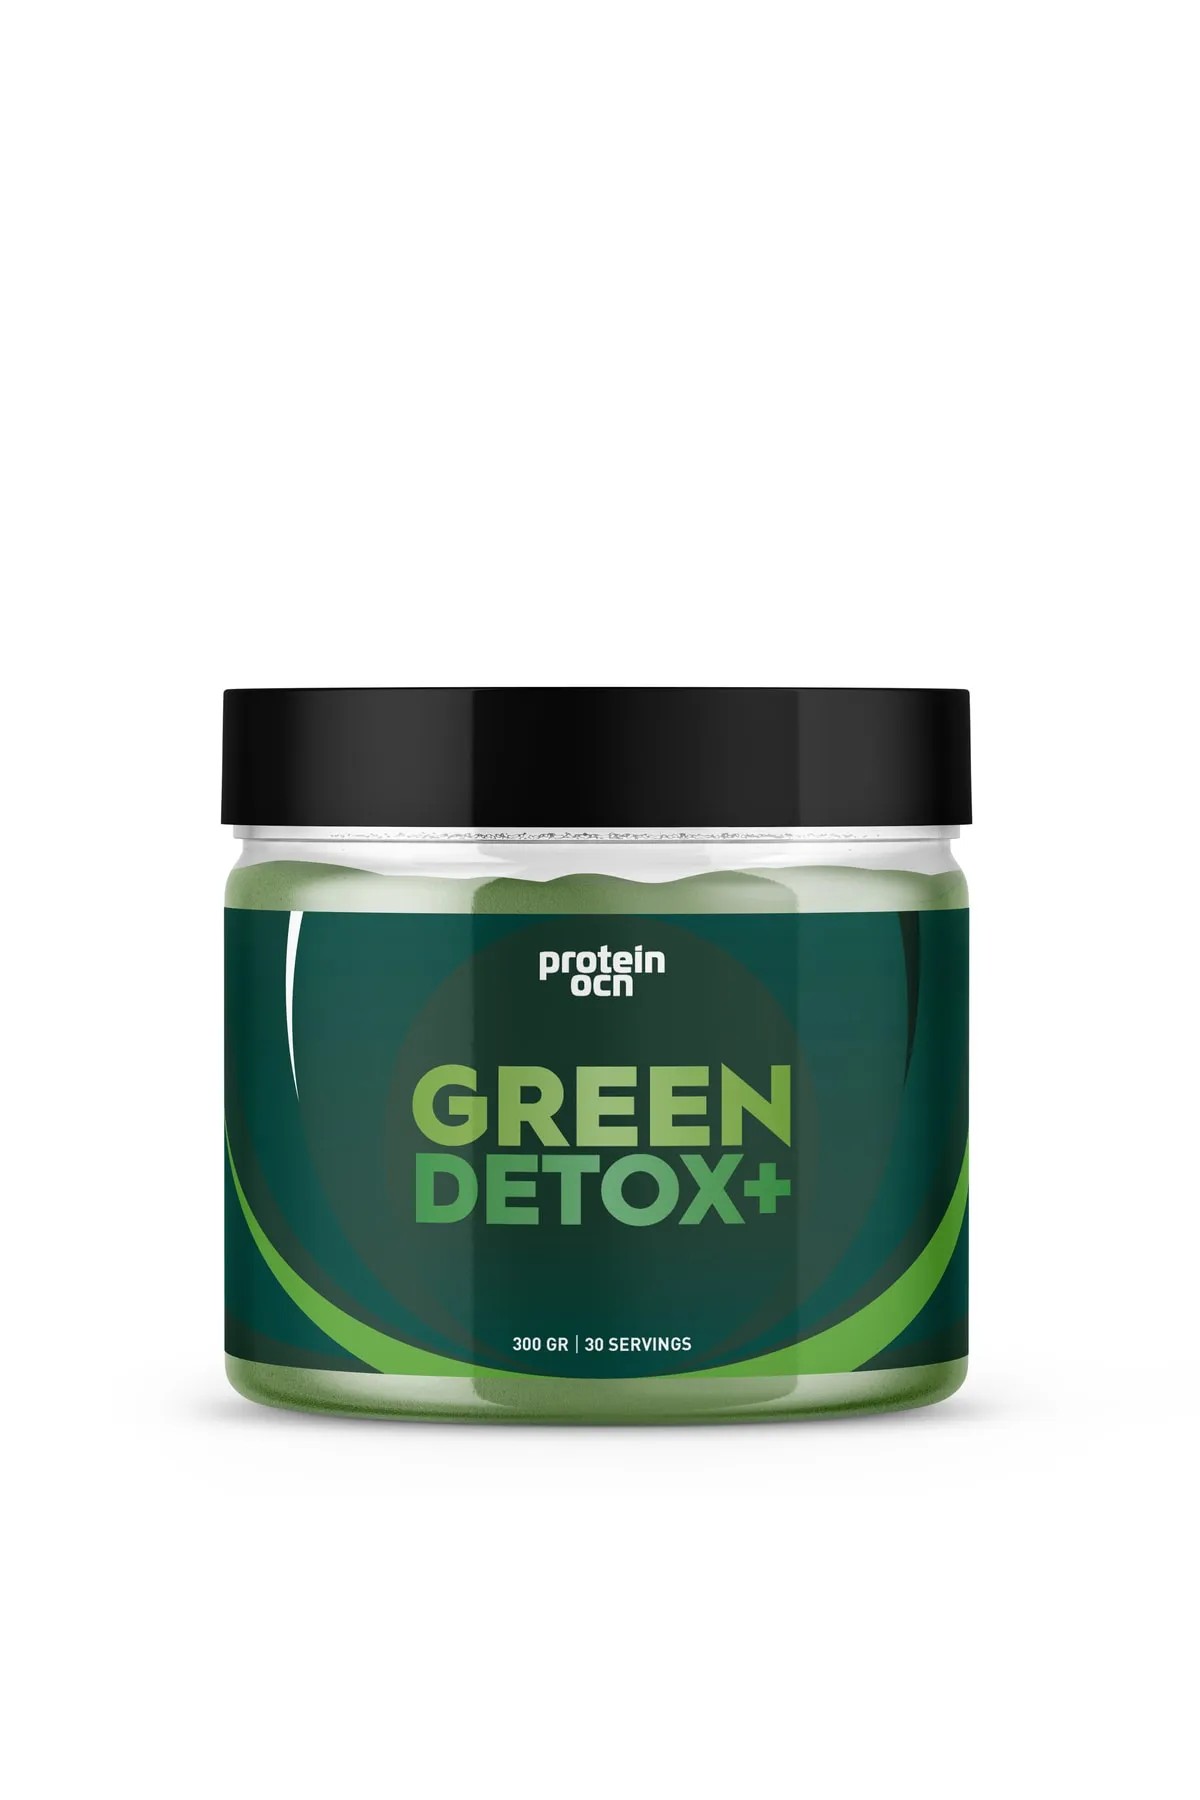 ProteinOcean Green Detox+ 300 Gram